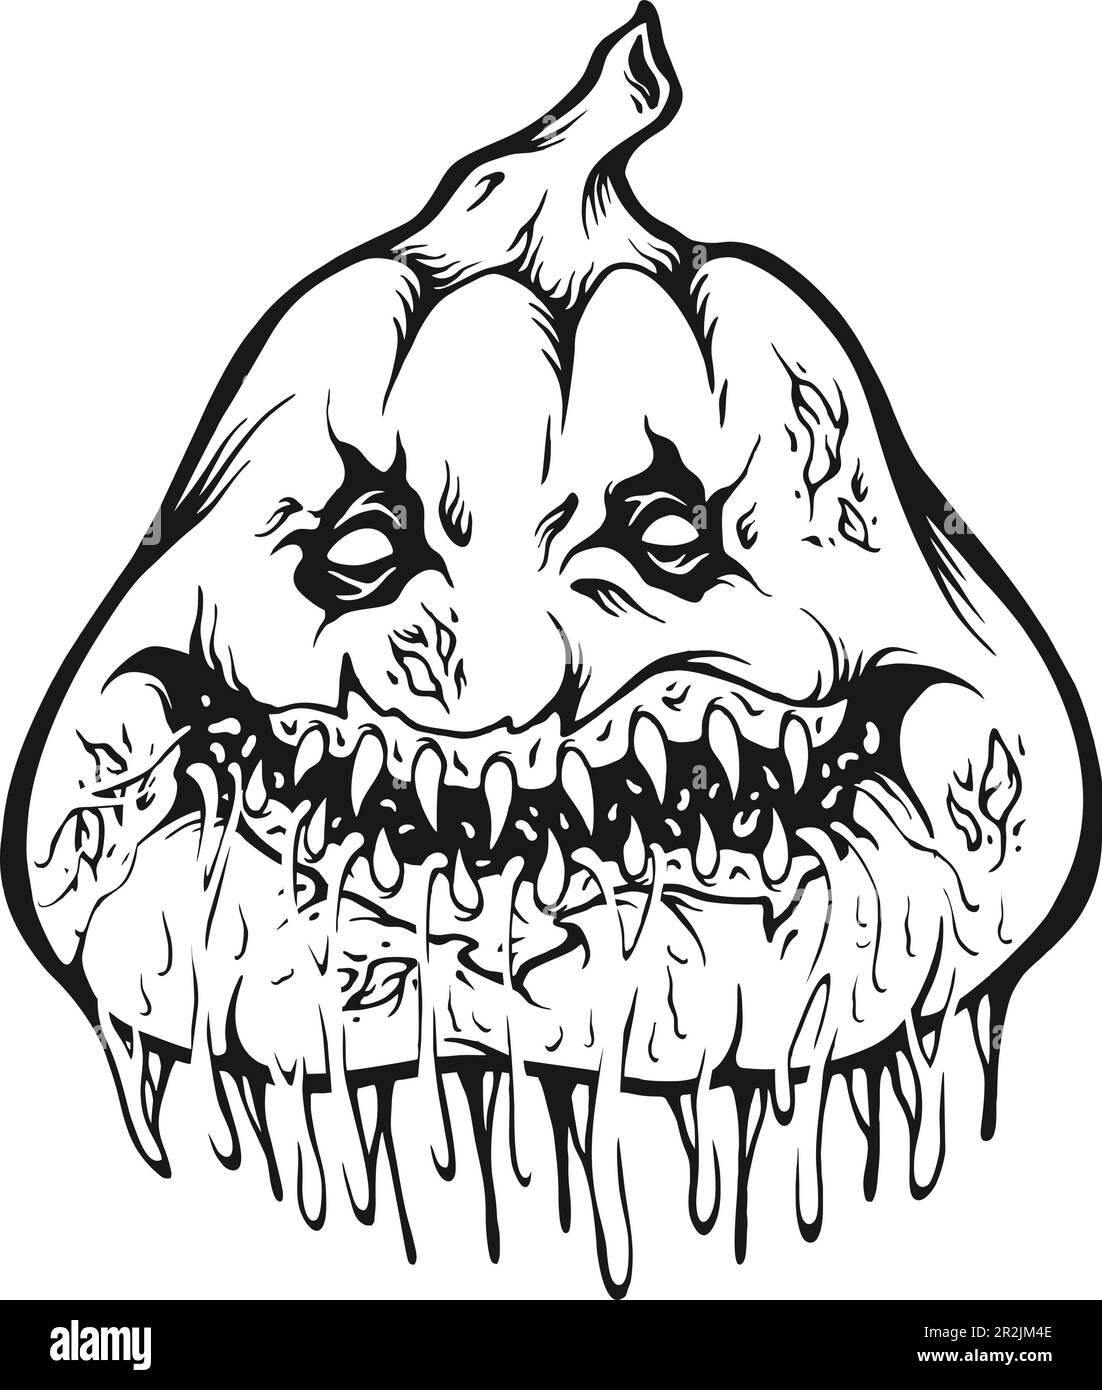 Tête de monstre de citrouille goutte d'eau helloween logo d'horreur illustrations silhouette vecteur illustrations pour votre logo de travail, t-shirt de marchandise, autocollants Illustration de Vecteur